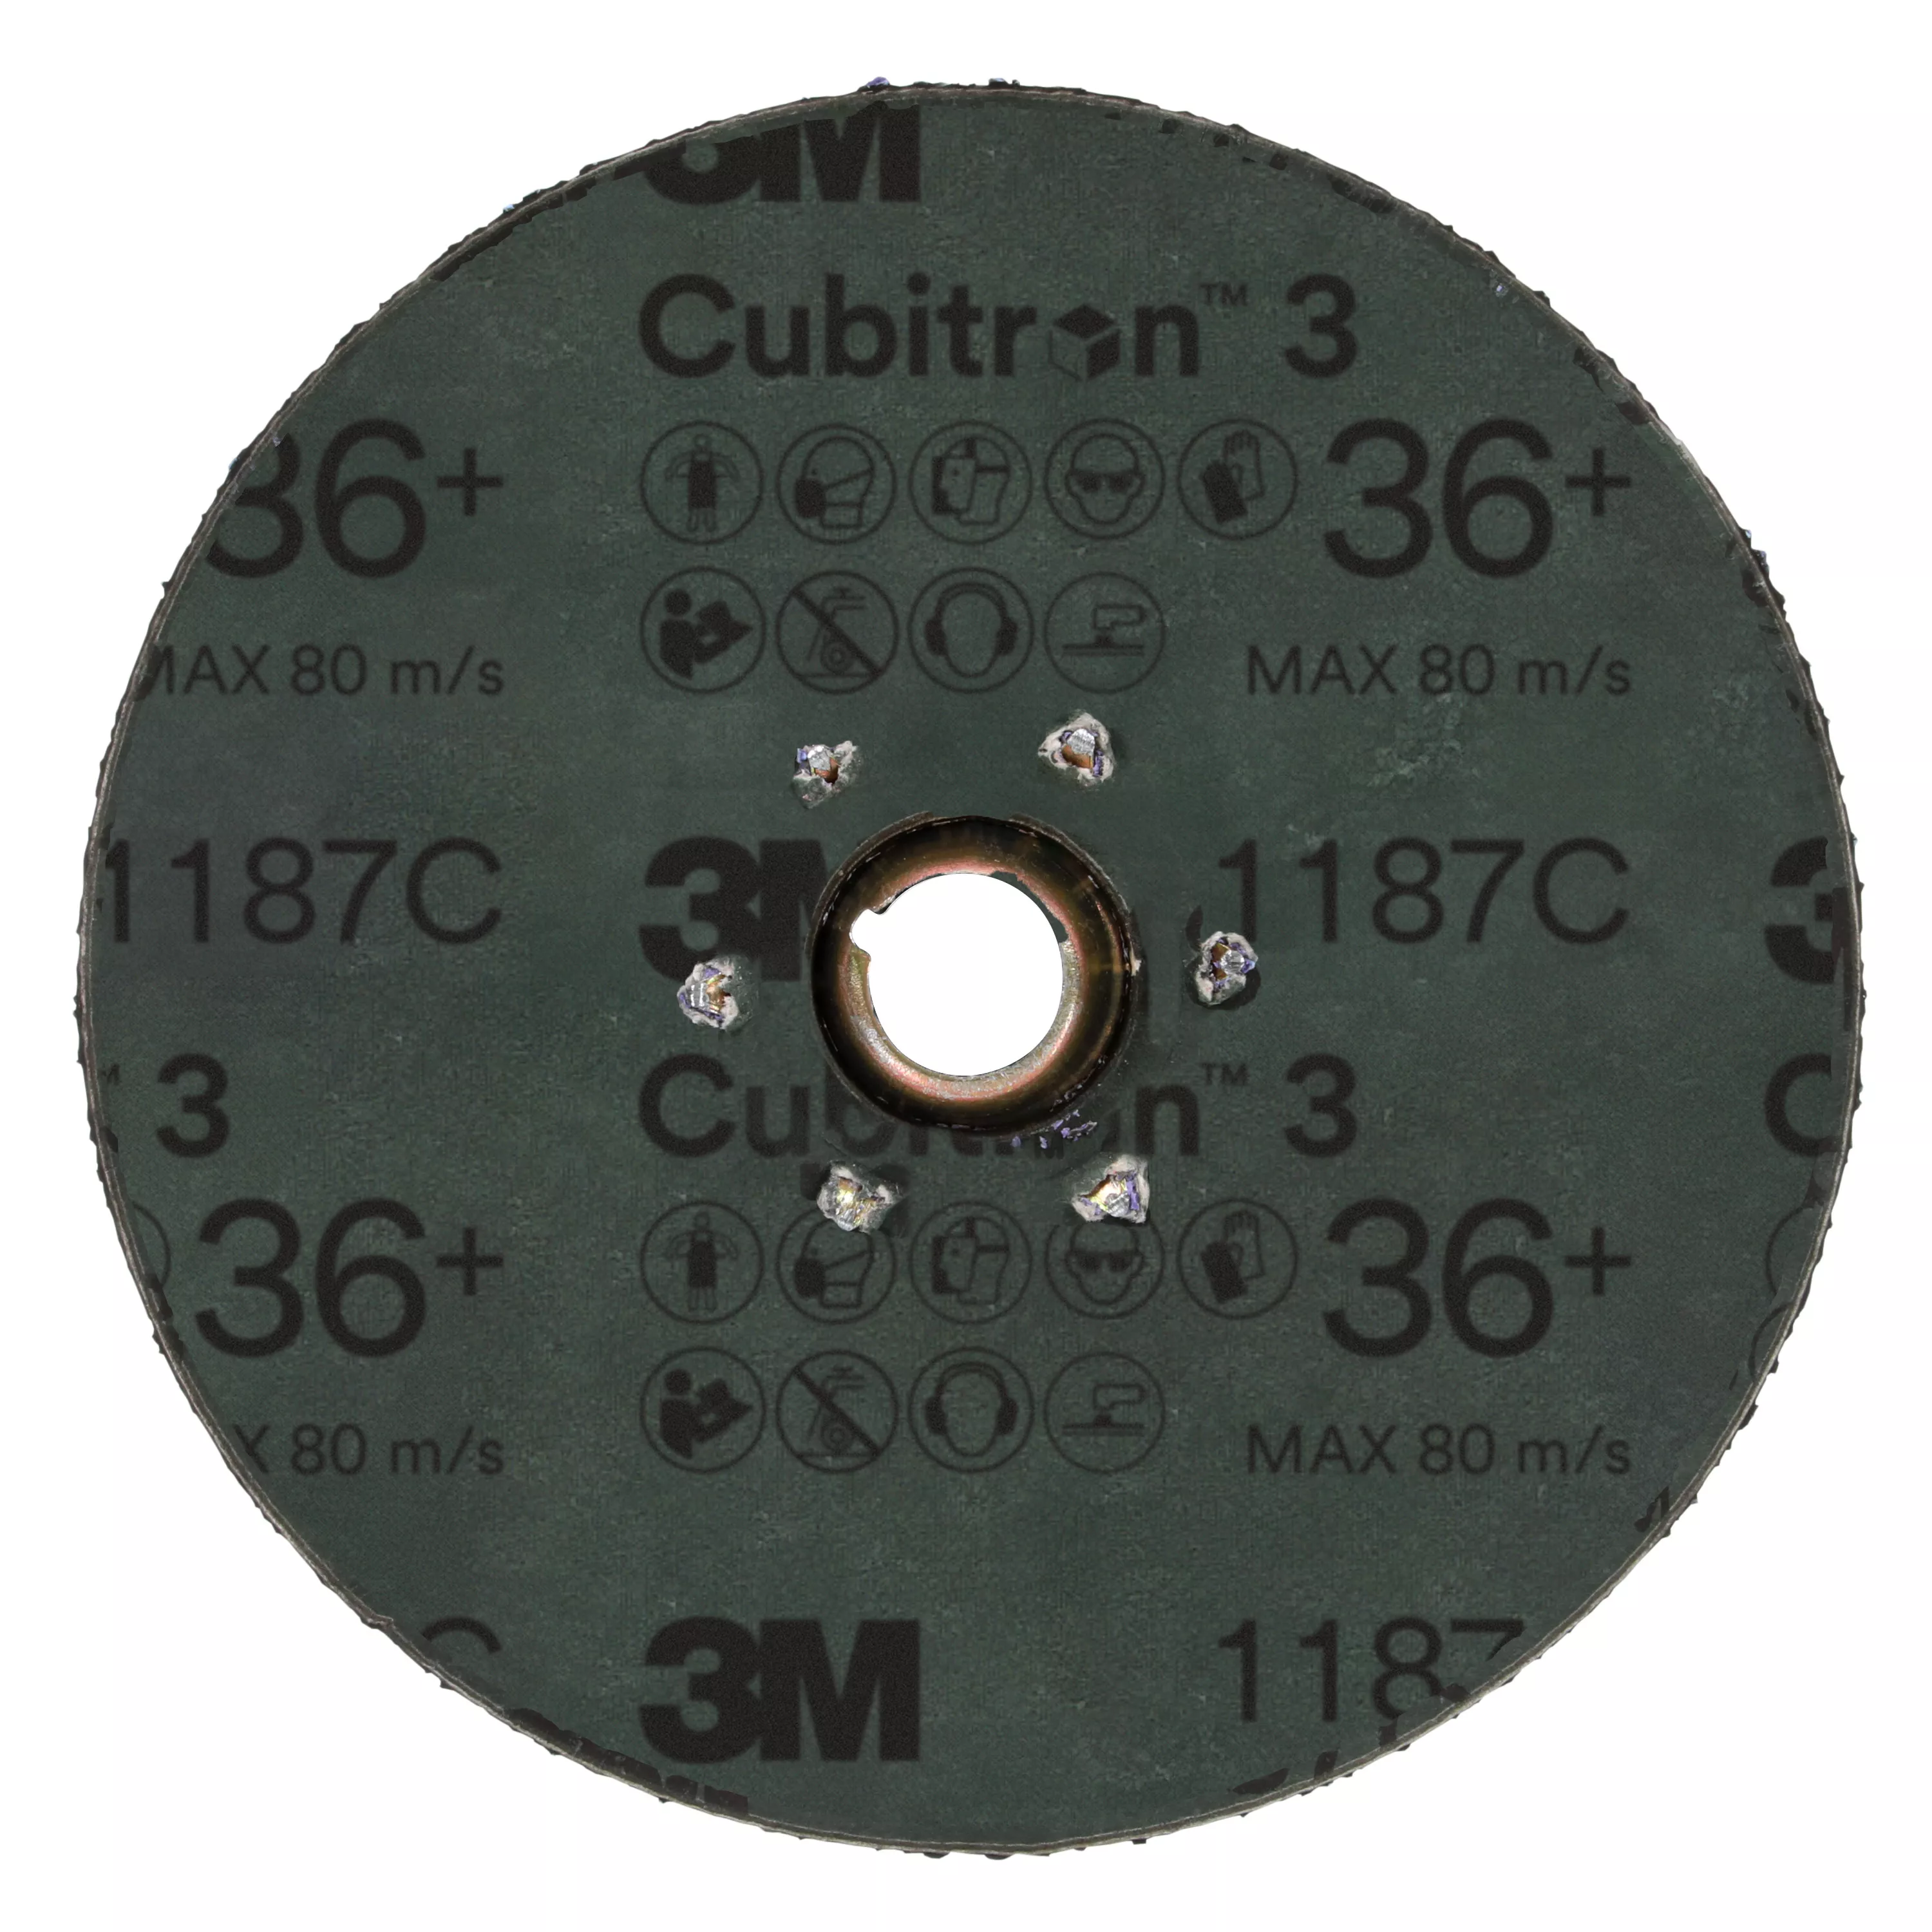 SKU 7100310793 | 3M™ Cubitron™ 3 Fibre Disc 1187C